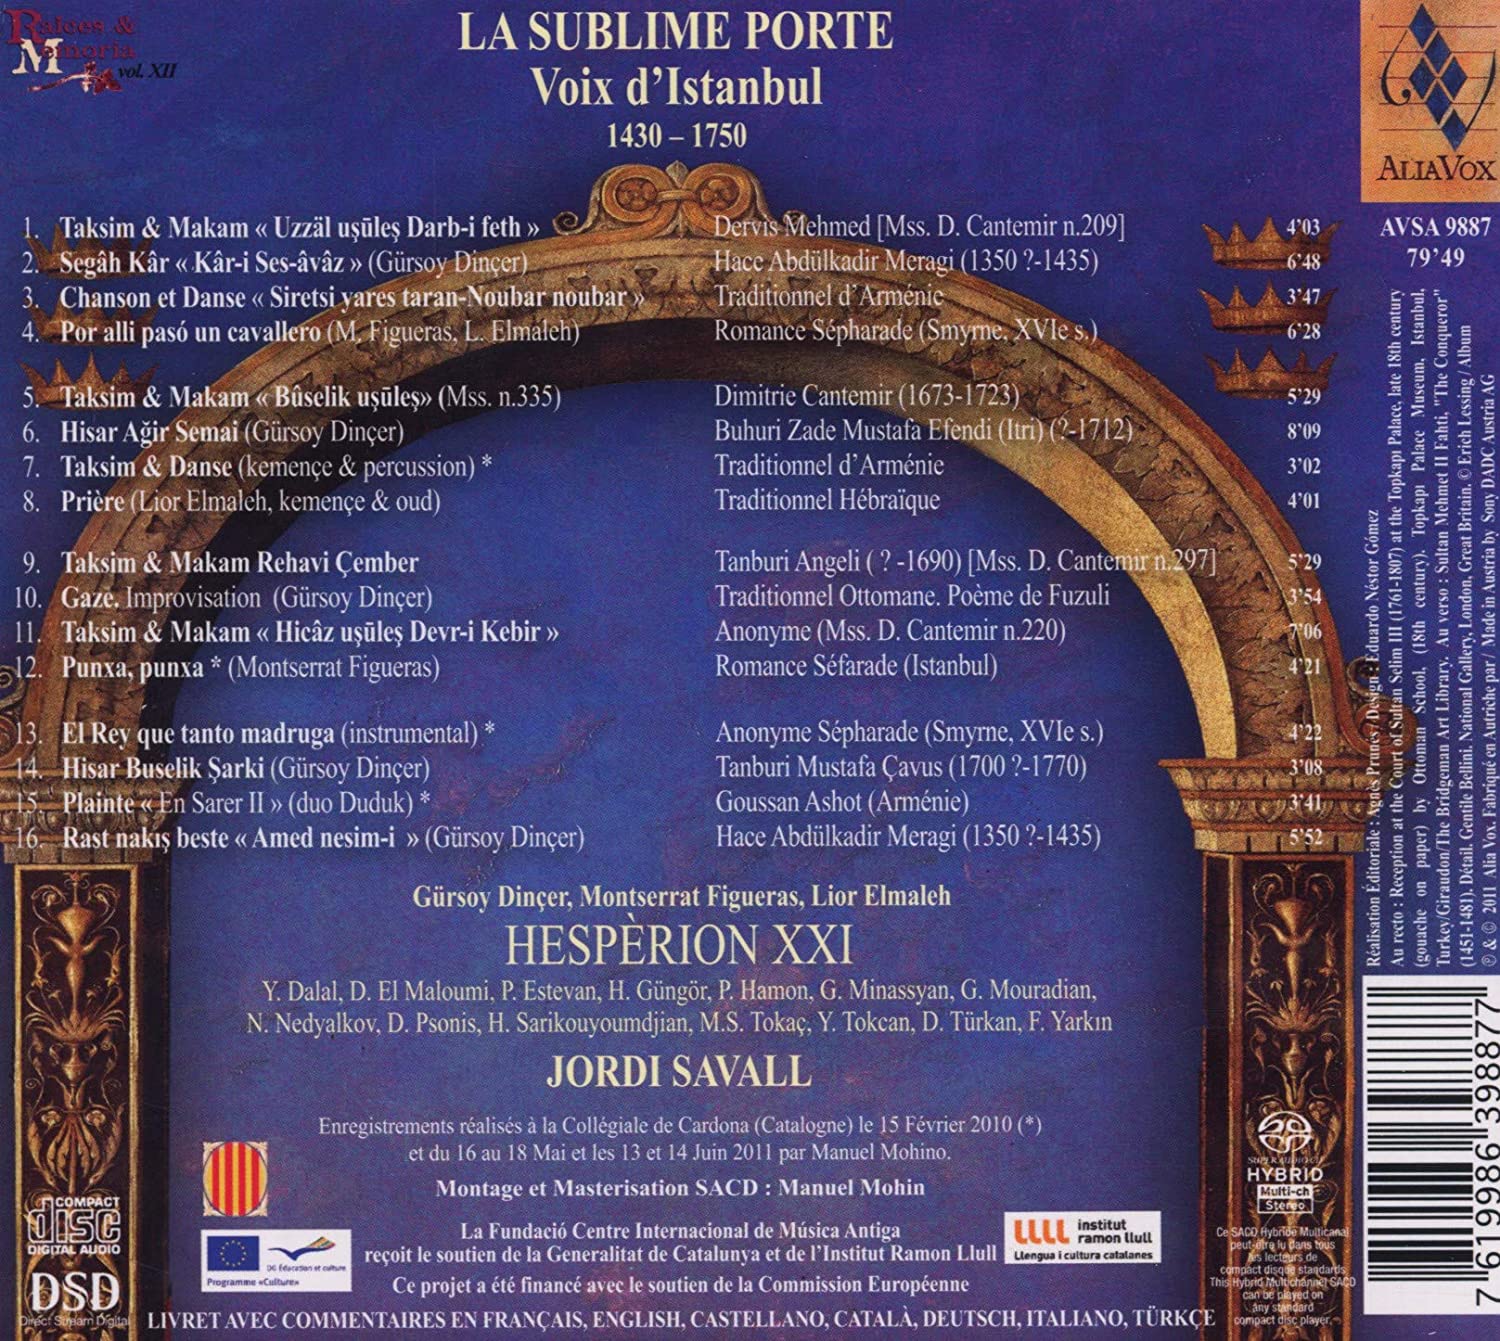 La Sublime Porte - Voix d'Istanbul 1400 - 1800 - tradycje wokalne Imperium Osmańskiego, diaspory Sefardyjskiej i Armenii - slide-1